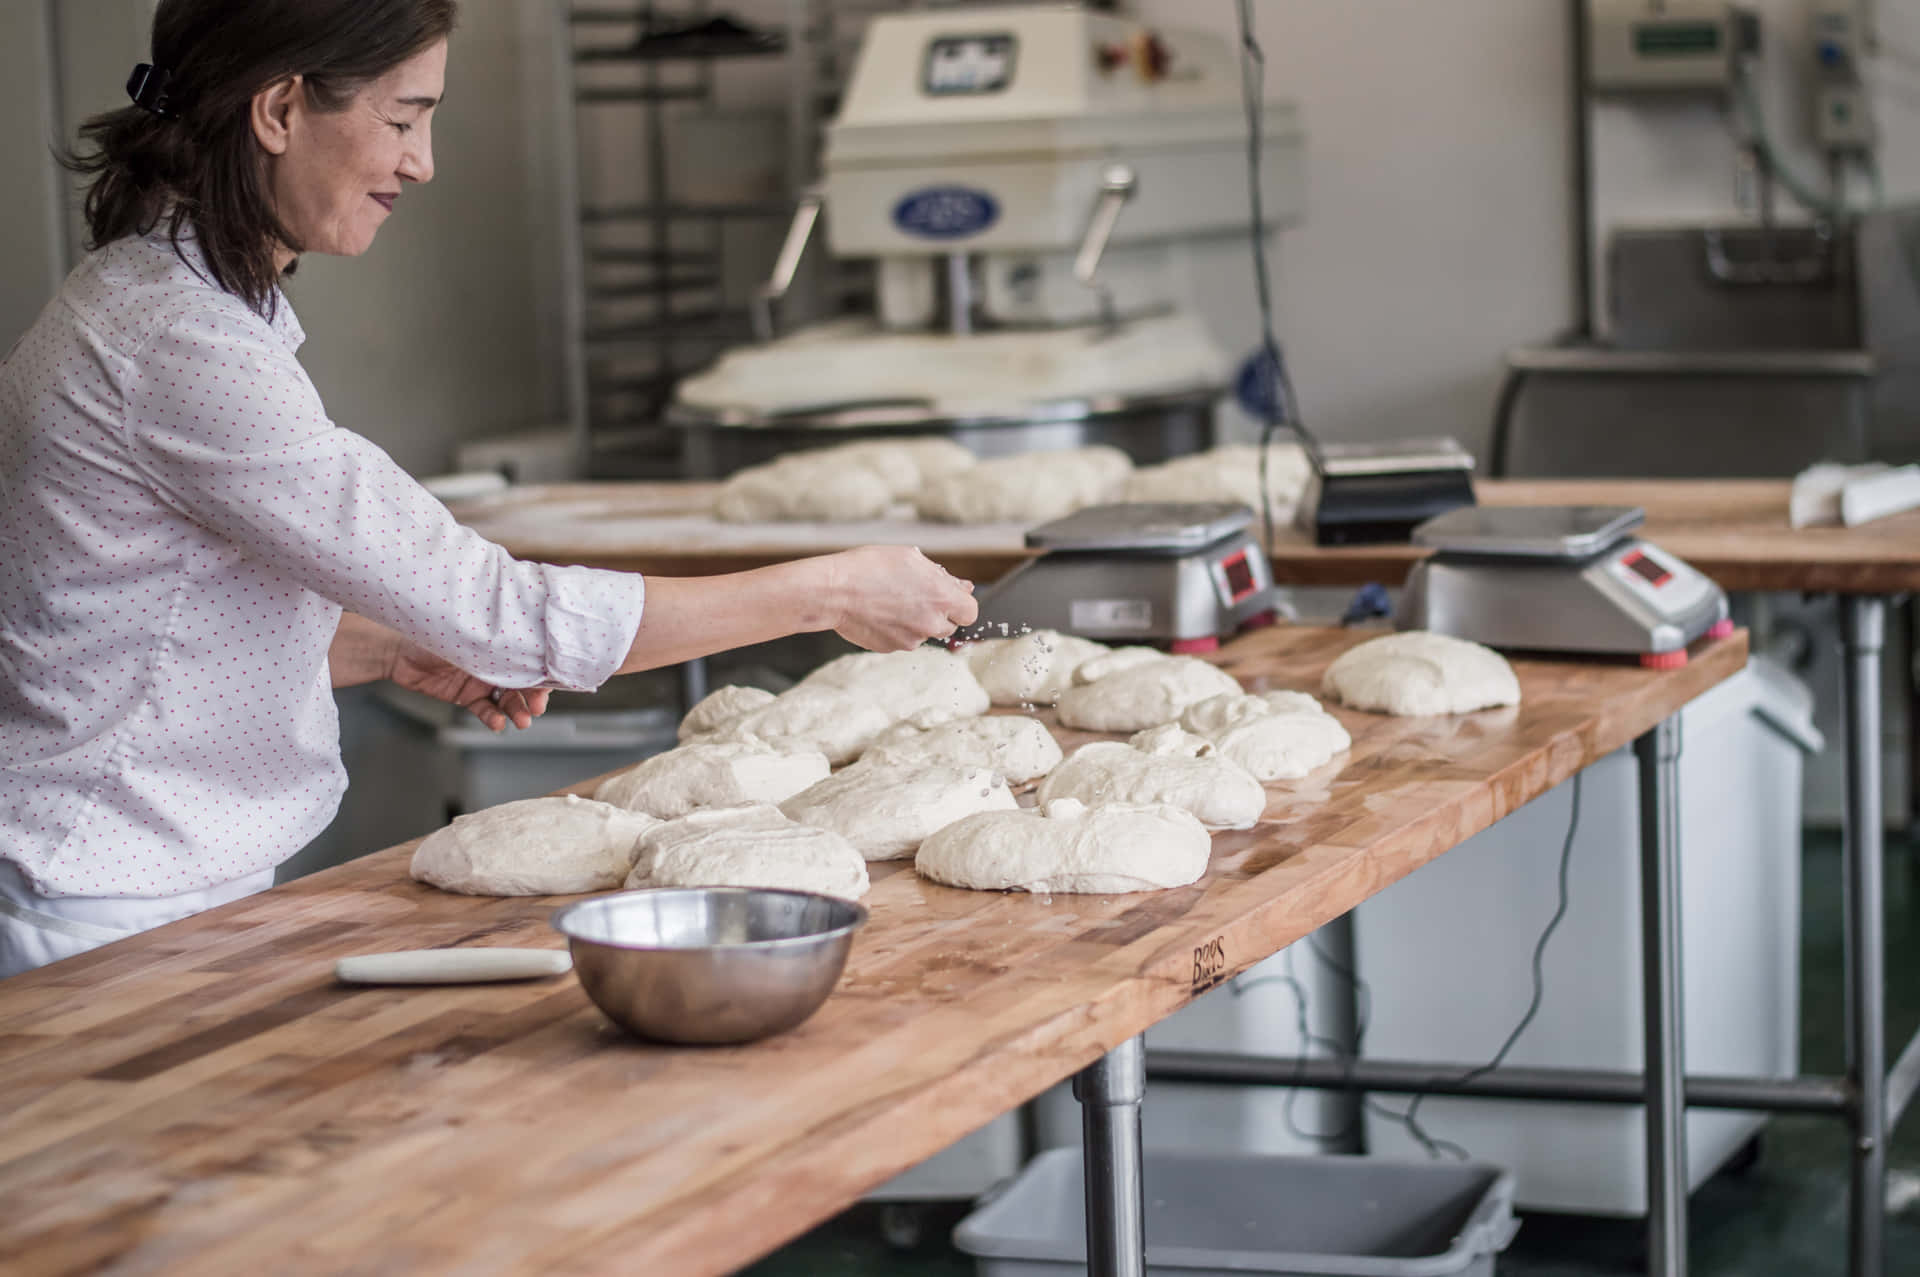 Enkvinna Förbereder Bröd I Ett Bageri.